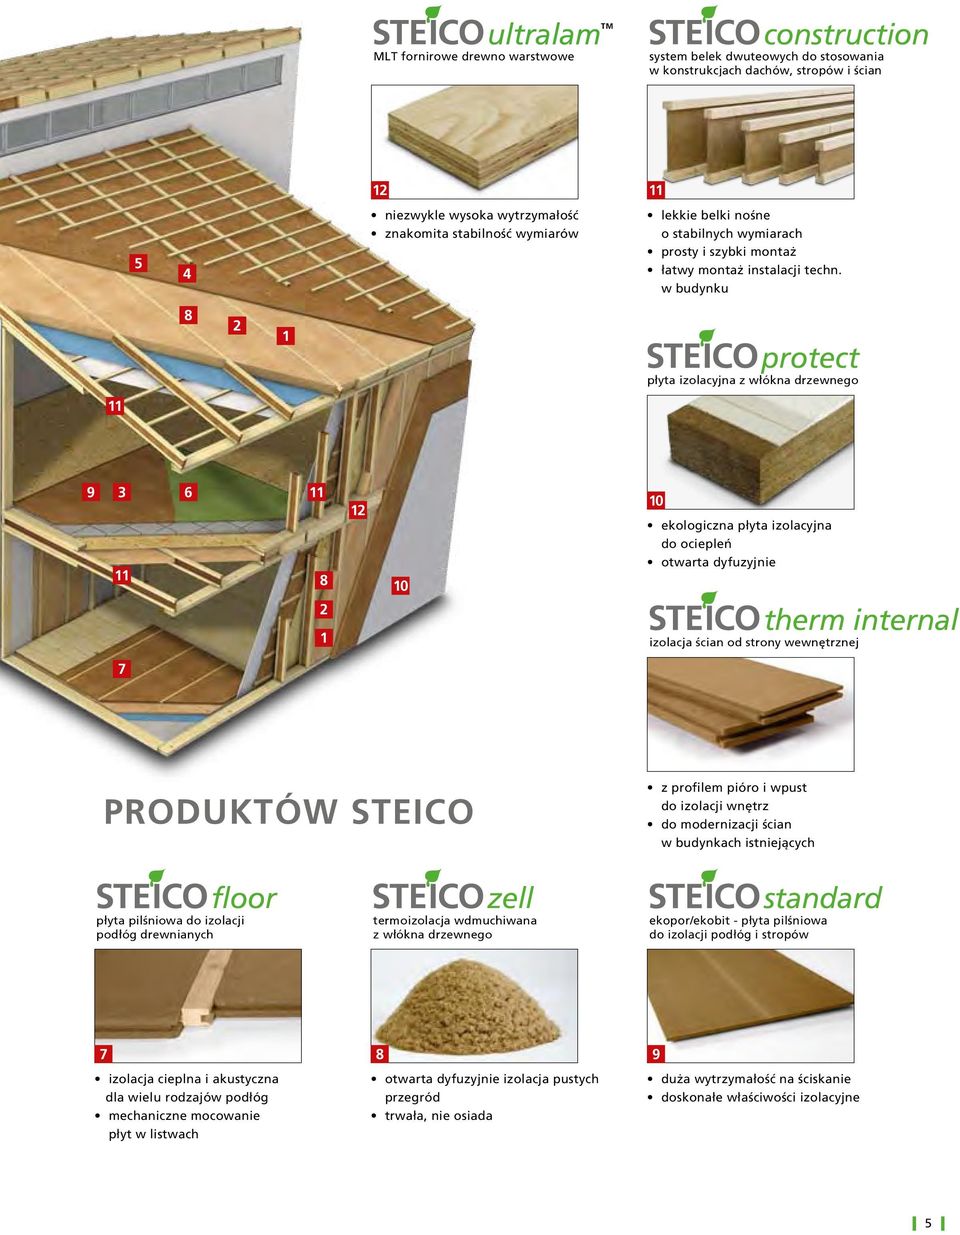 produktów steico z profilem pióro i wpust do izolacji wnętrz do modernizacji ścian w budynkach istniejących floor płyta pilśniowa do izolacji podłóg drewnianych zell termoizolacja wdmuchiwana z